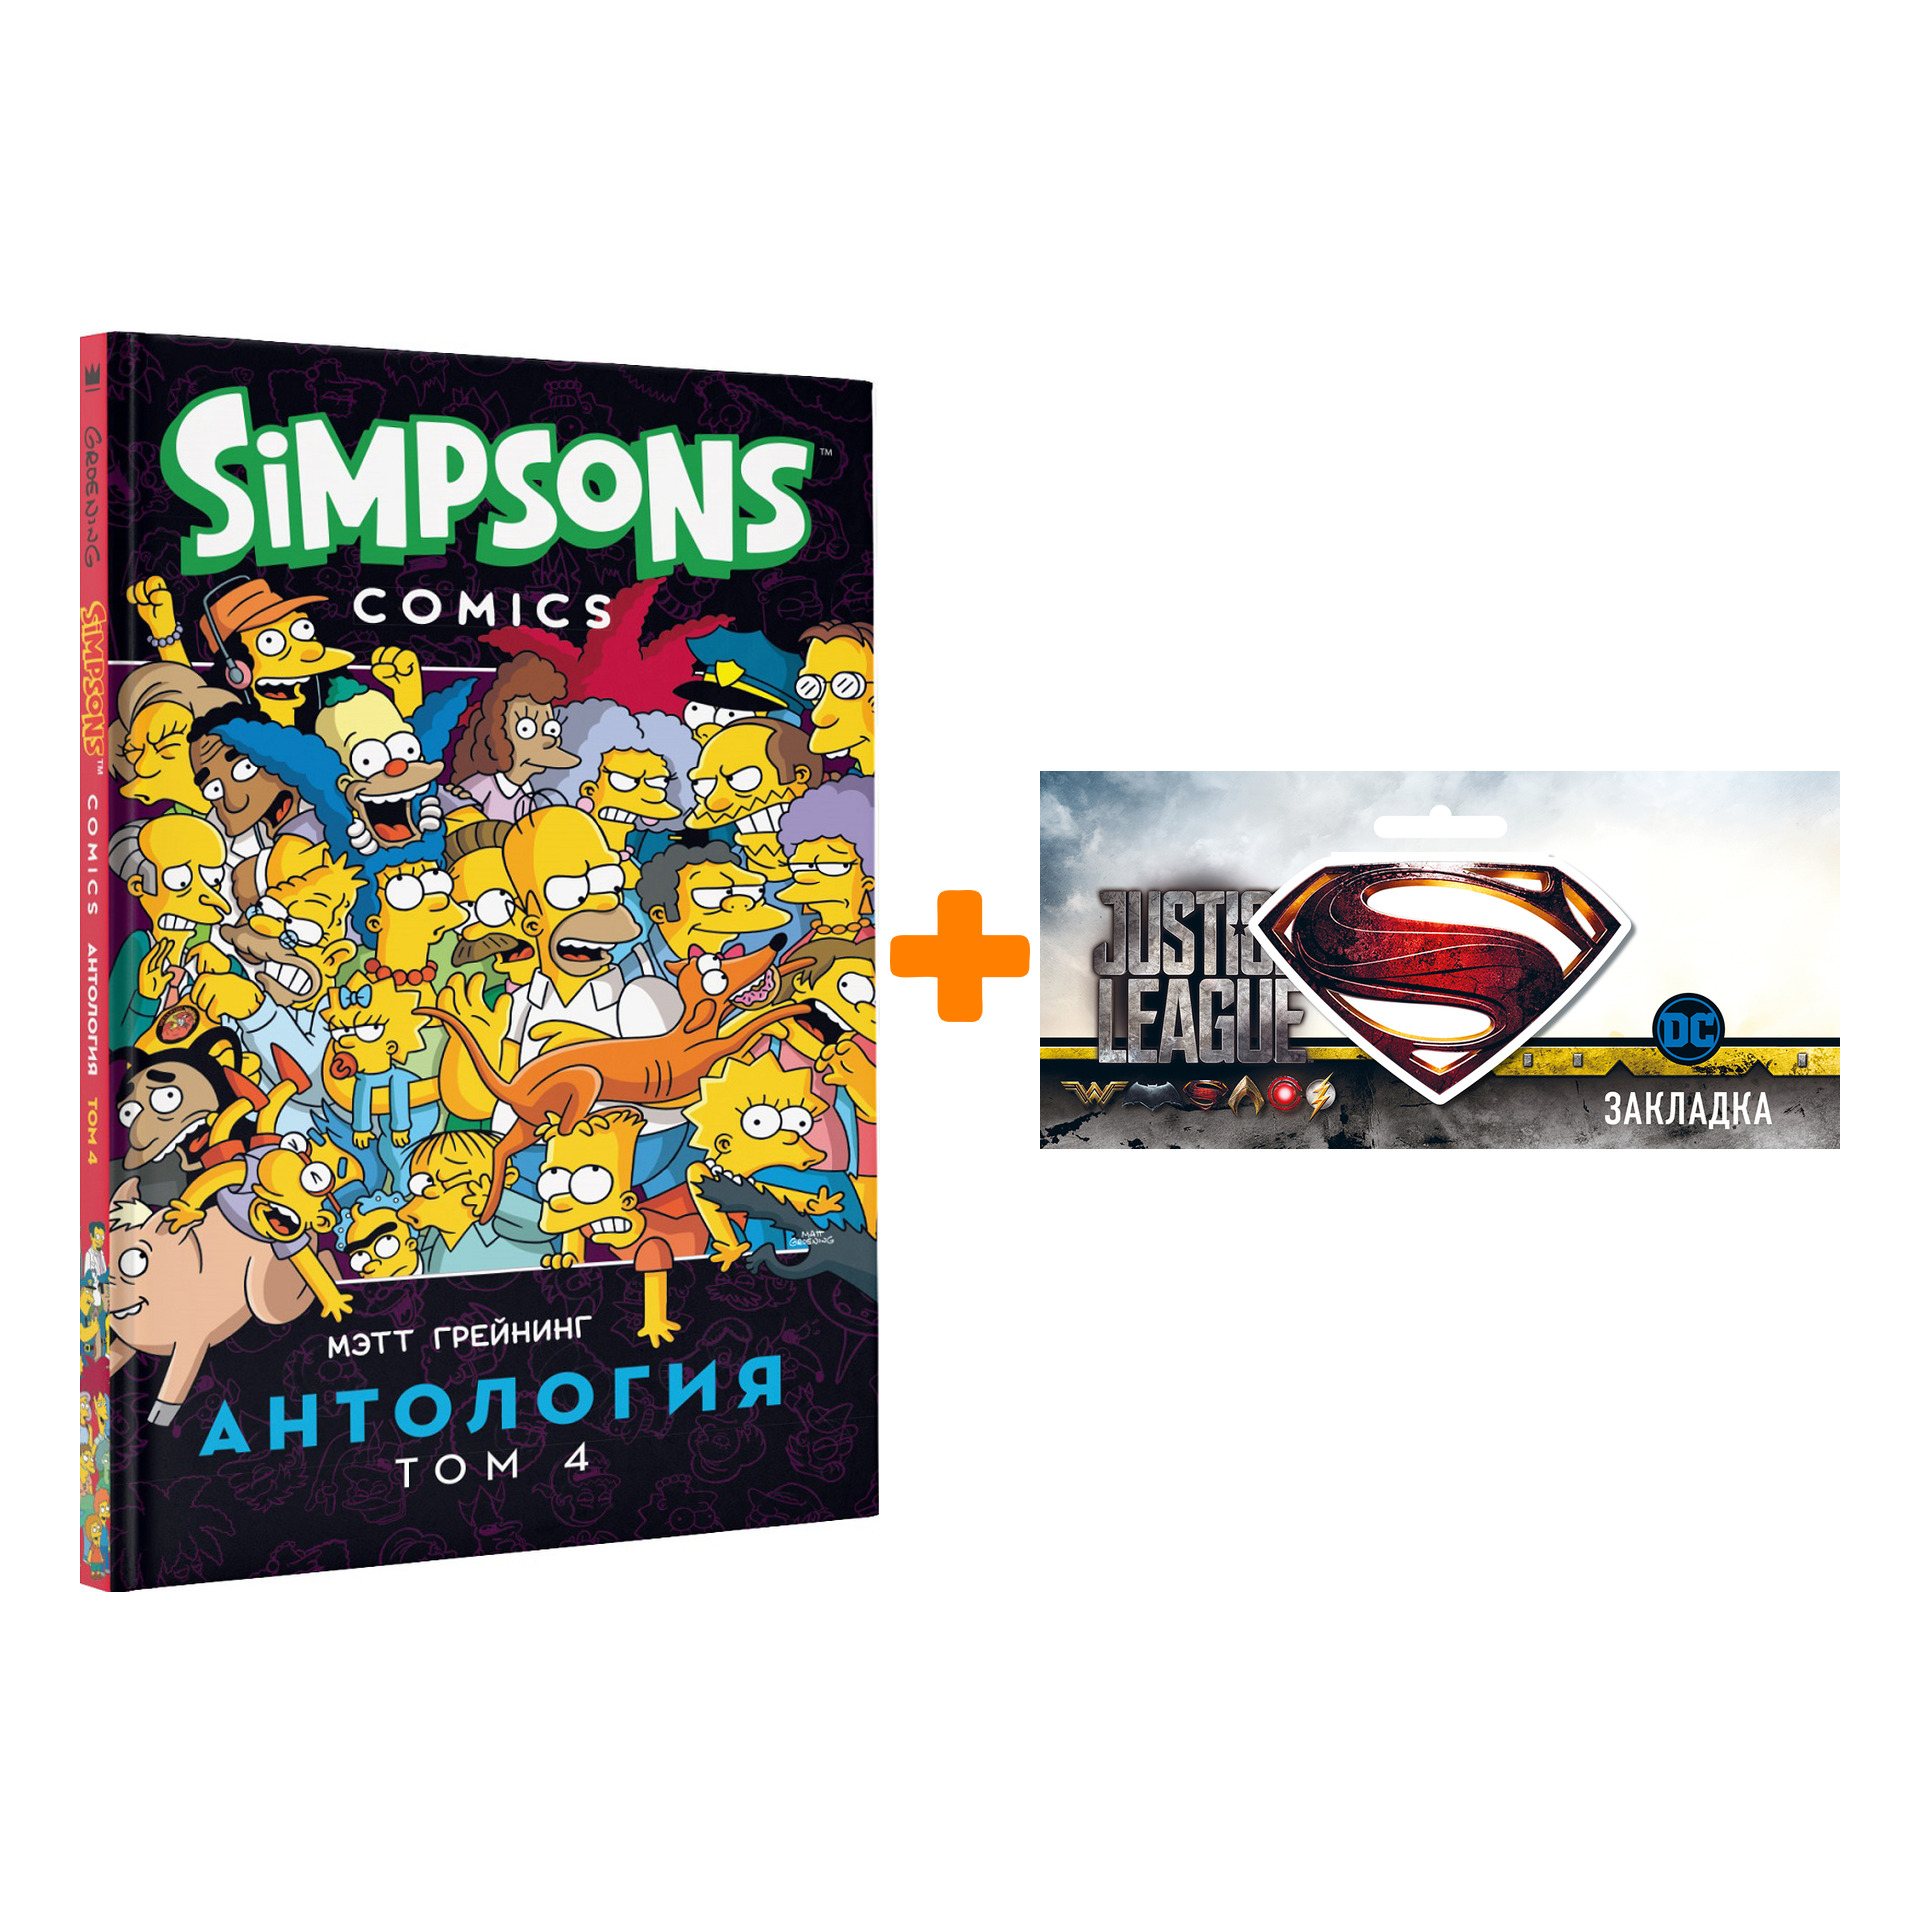 Набор Комикс Simpsons Антология Том 4 + Закладка DC Justice League Superman магнитная